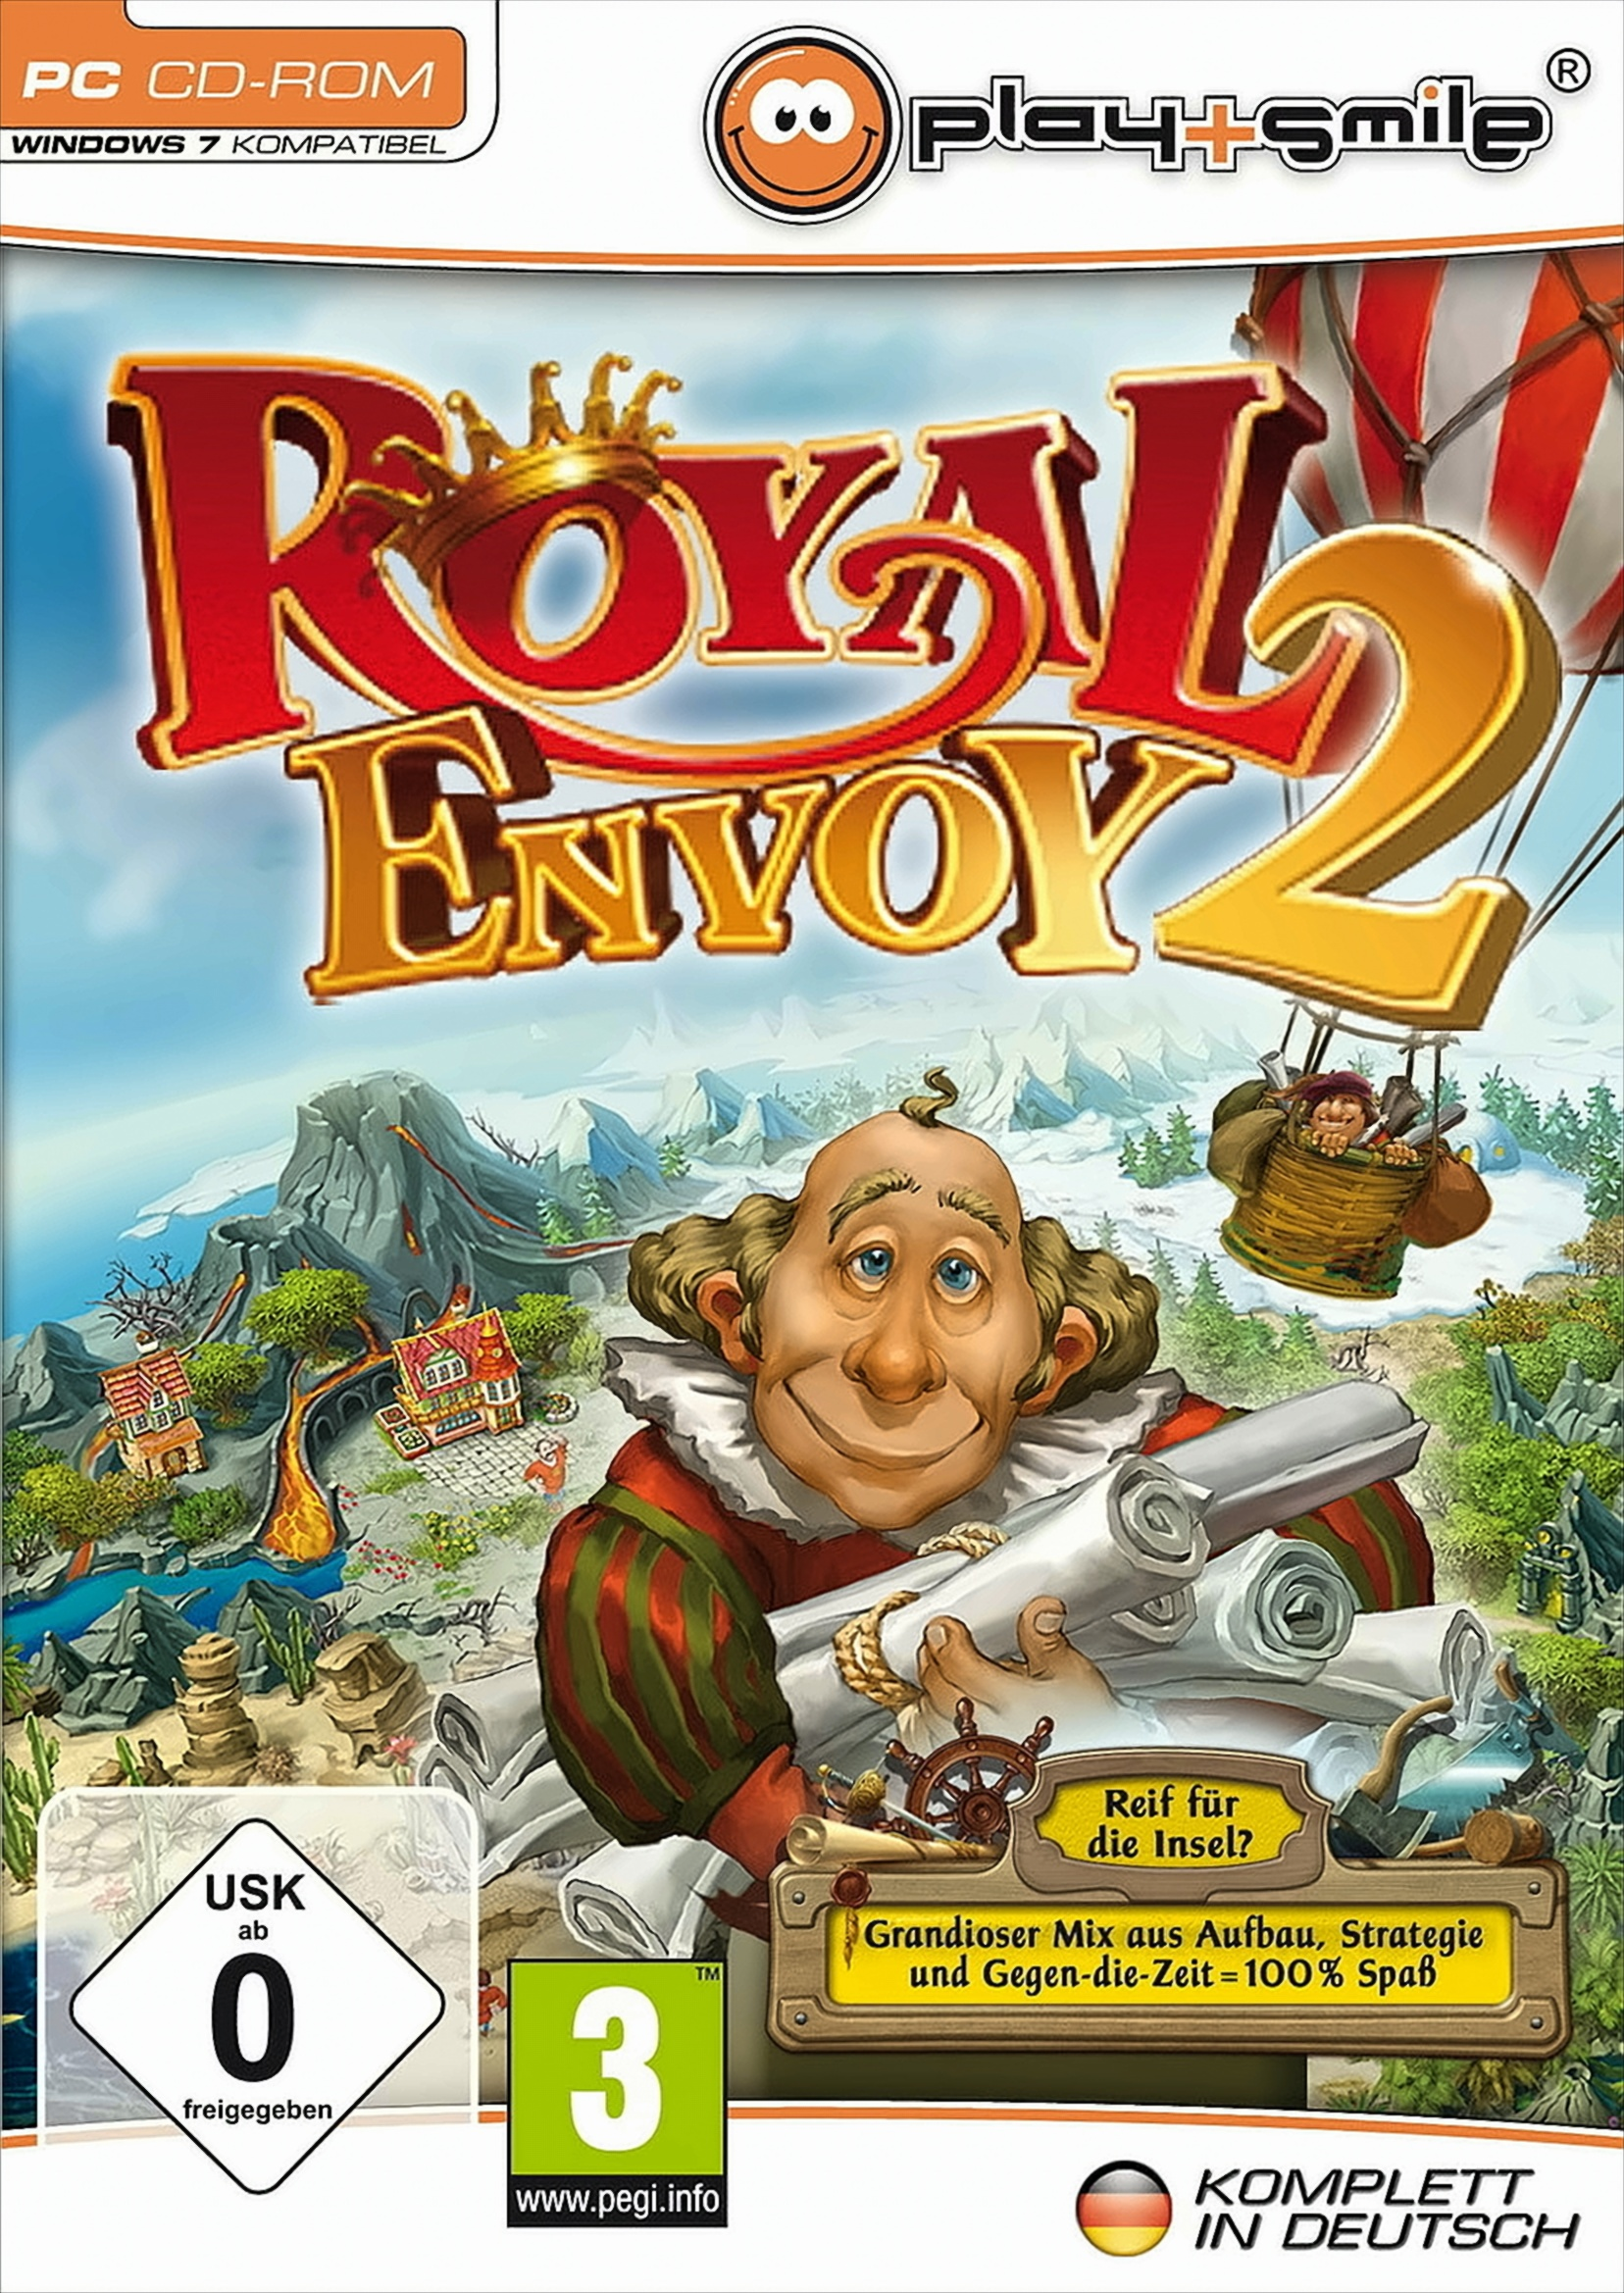 Envoy 2 Royal [PC] -